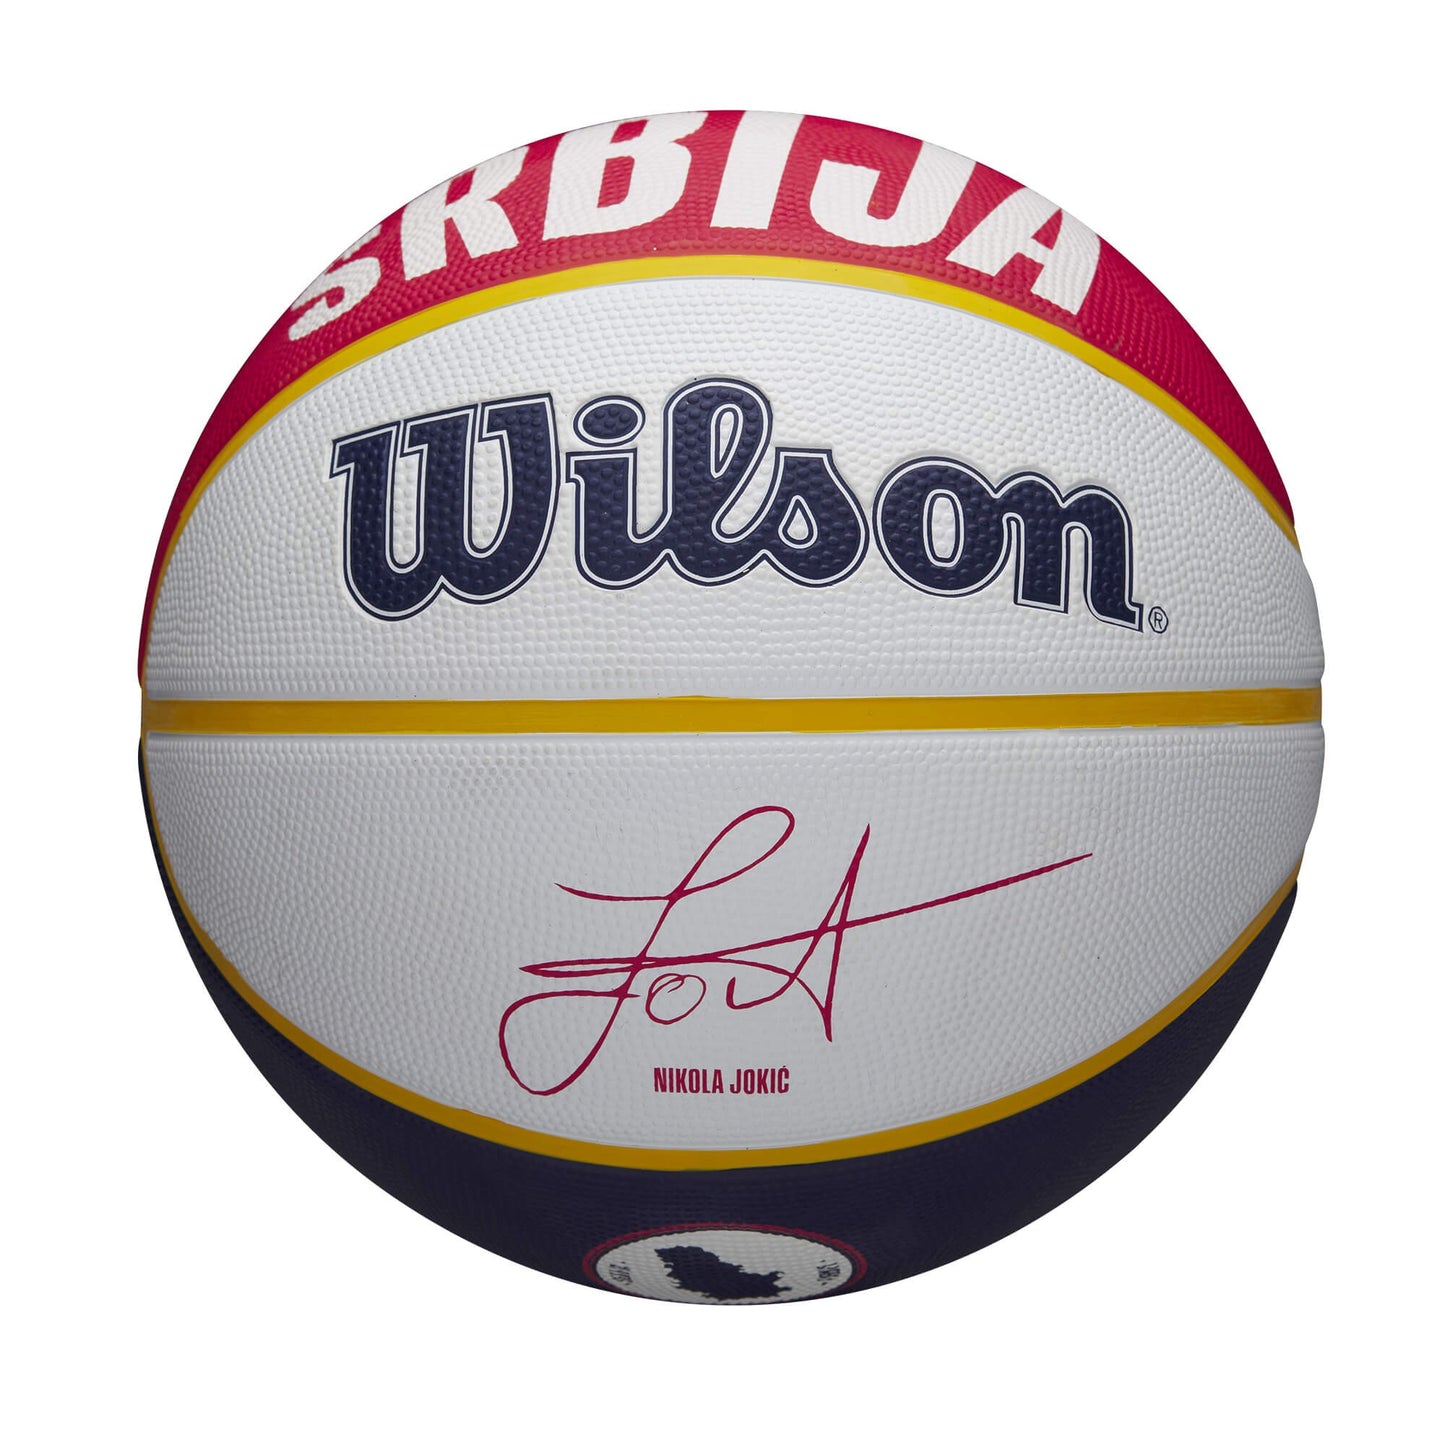 WILSON NBA PLAYER LOCAL BSKT JOKIC White/Red/Navy (sz. 7)